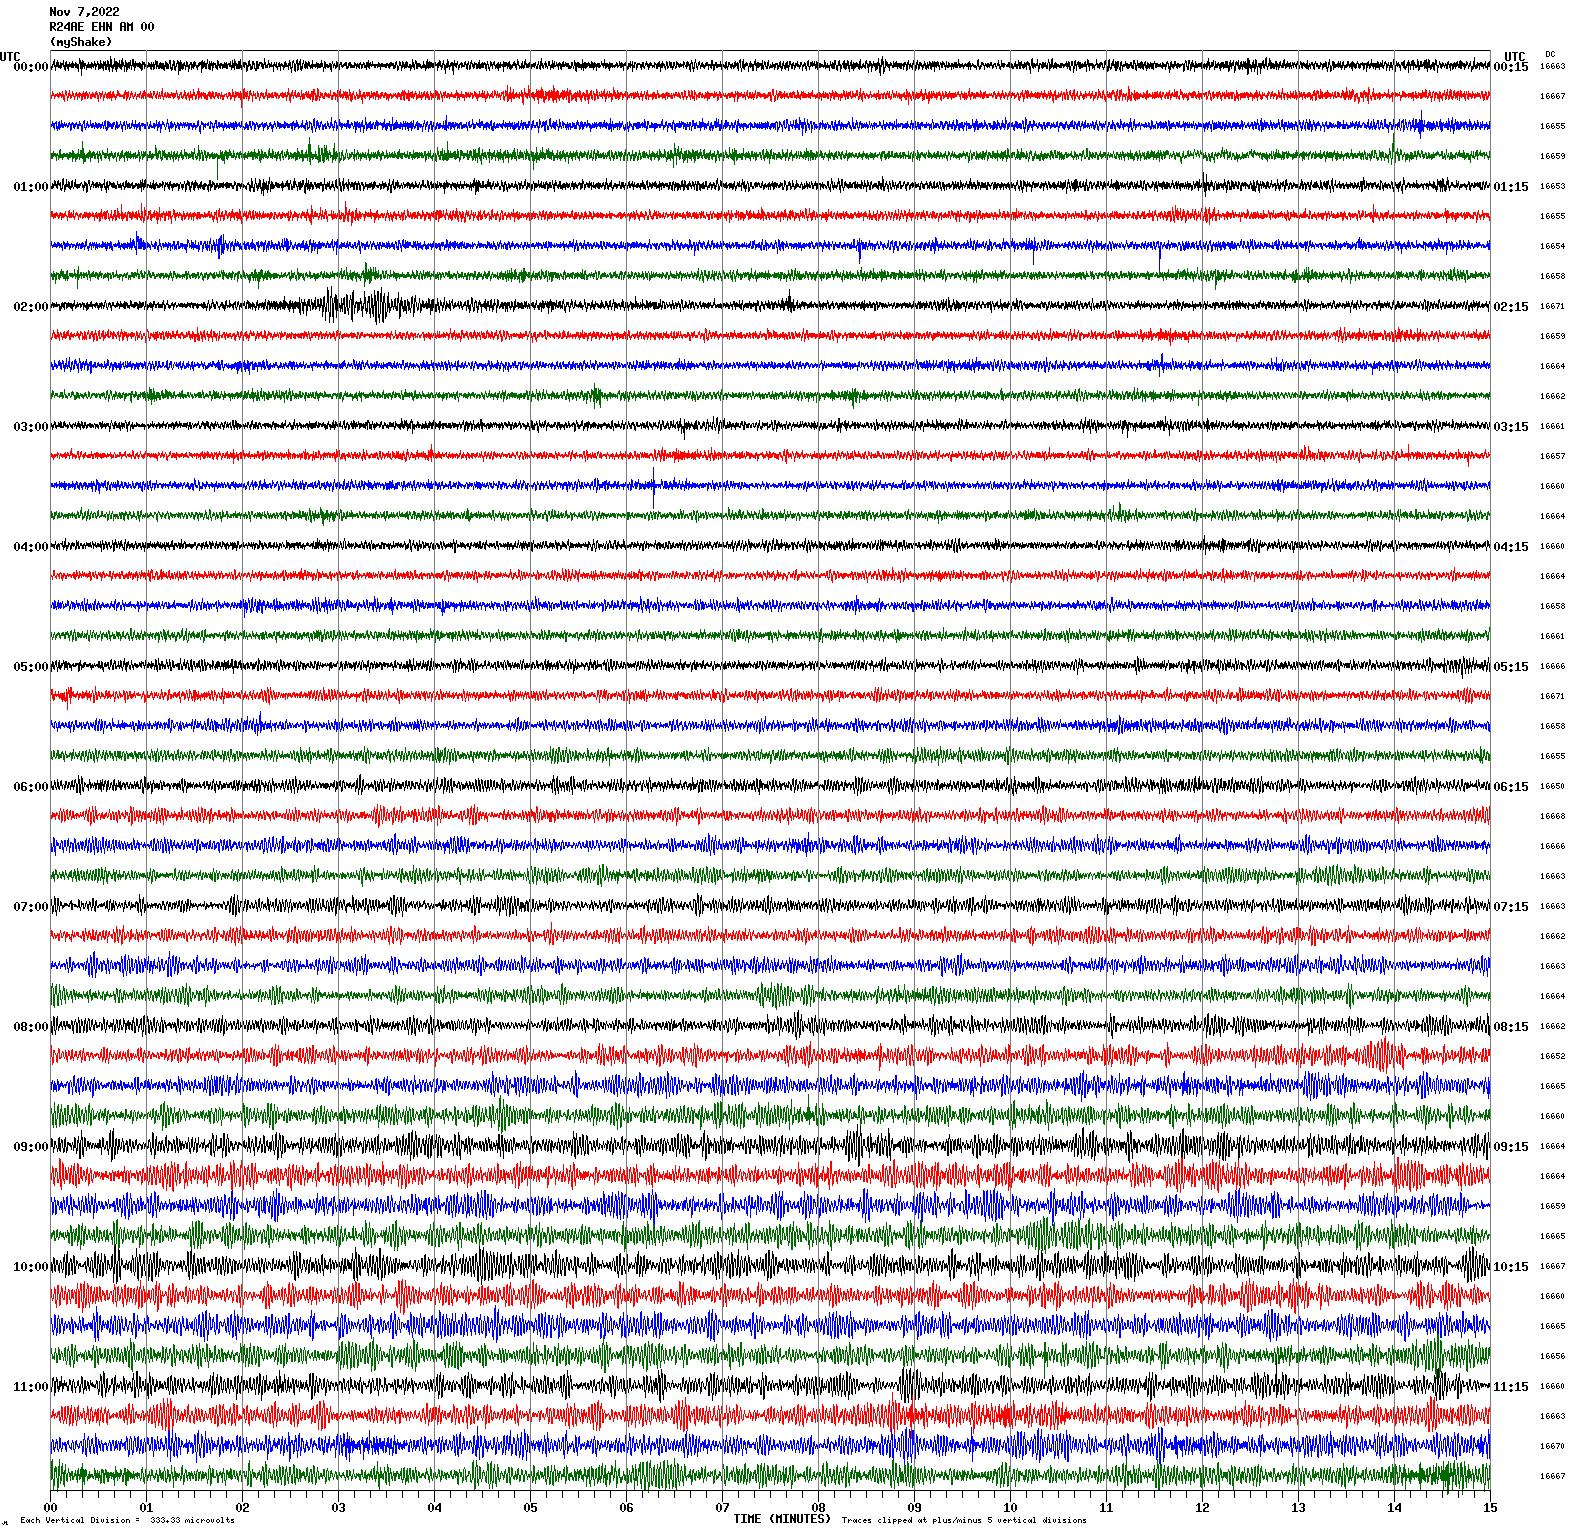 /seismic-data/R24AN/R24AE_EHN_AM_00.2022110700.gif